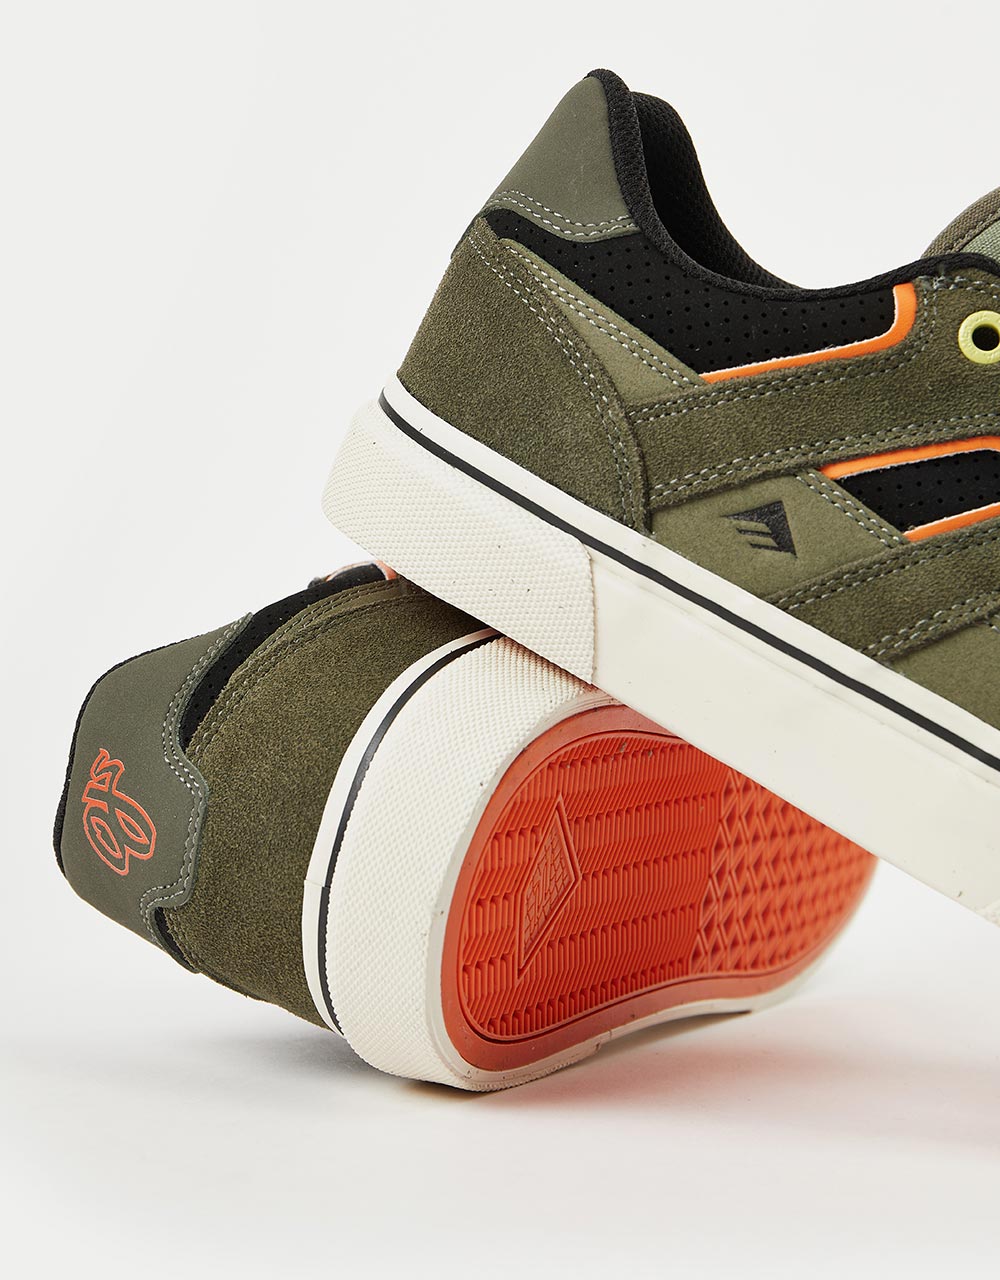 Emerica x OJ Tilt G6 Vulc Skate Shoes - Olive